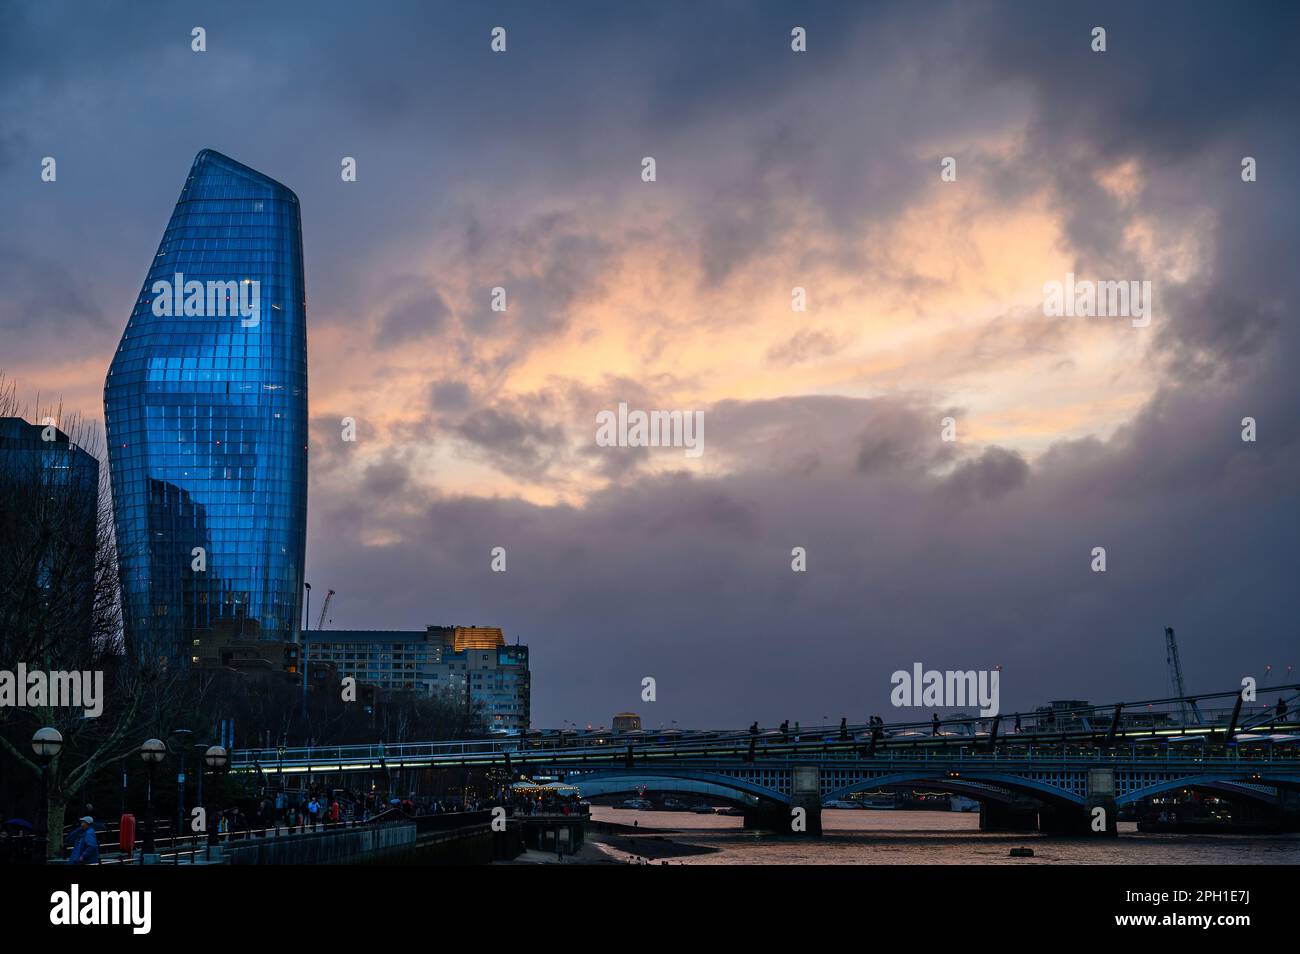 Londres, Reino Unido: Un Blackfriars o el Boomerang, una torre distintiva de uso mixto en Southwark con un cielo dramático y el río Támesis. Foto de stock